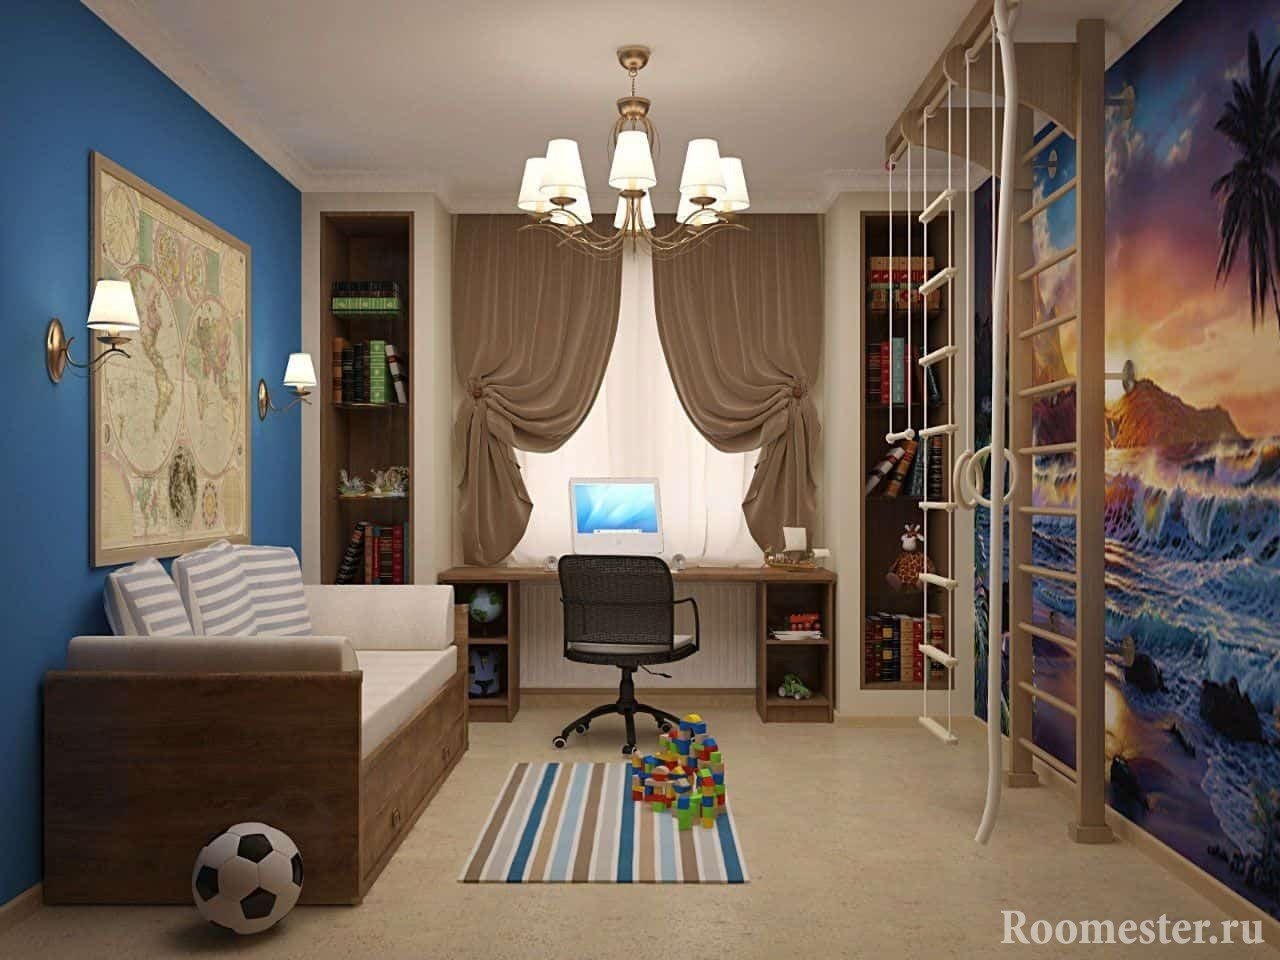 Дизайн проект комнаты в морском стиле 